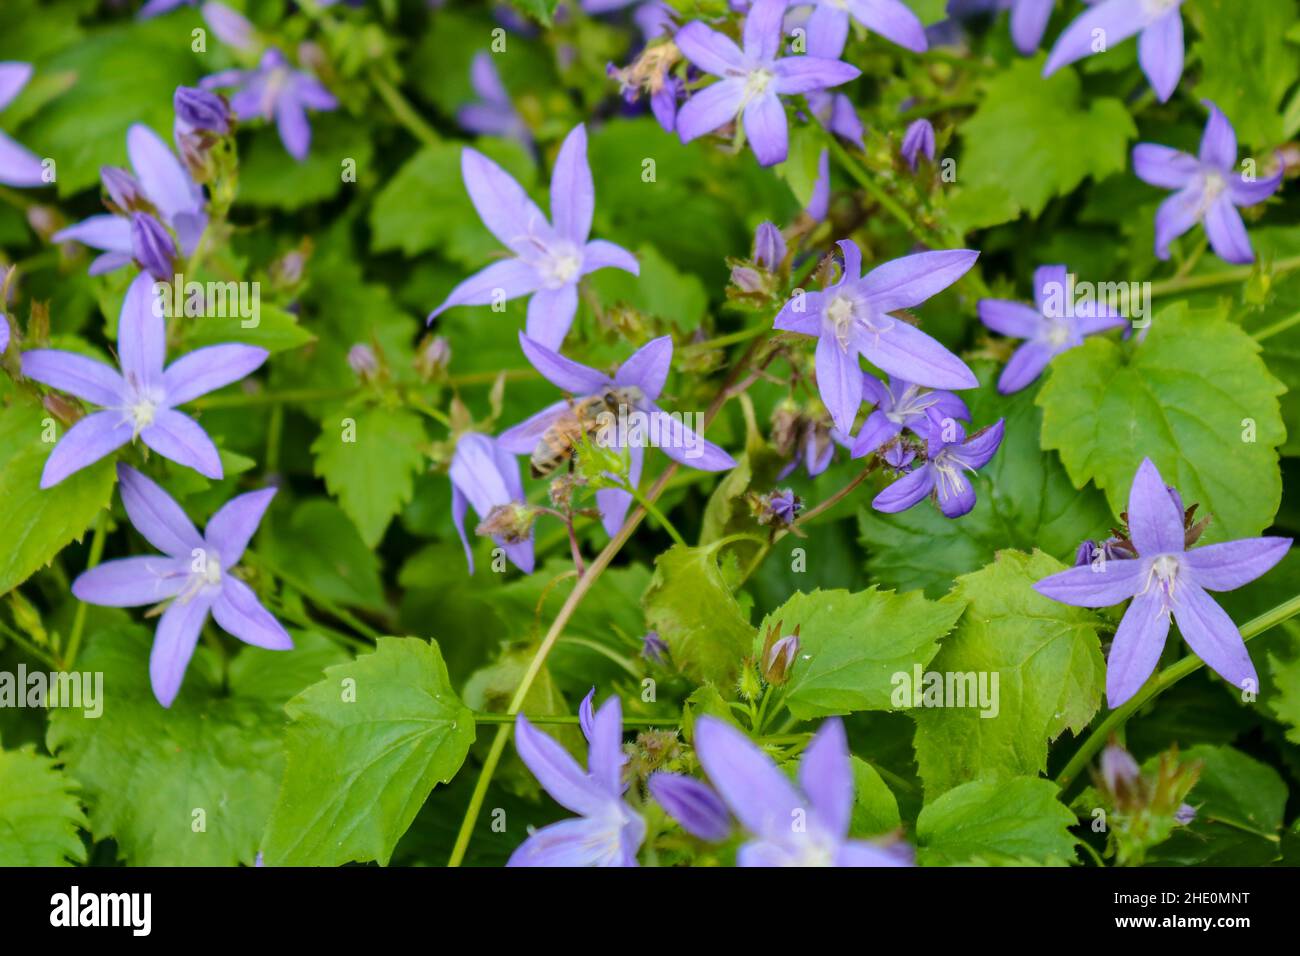 Purple flowering serbian bellflower (Campanula poscharskyana) or Lisduggan with green leaves in Germany Stock Photo